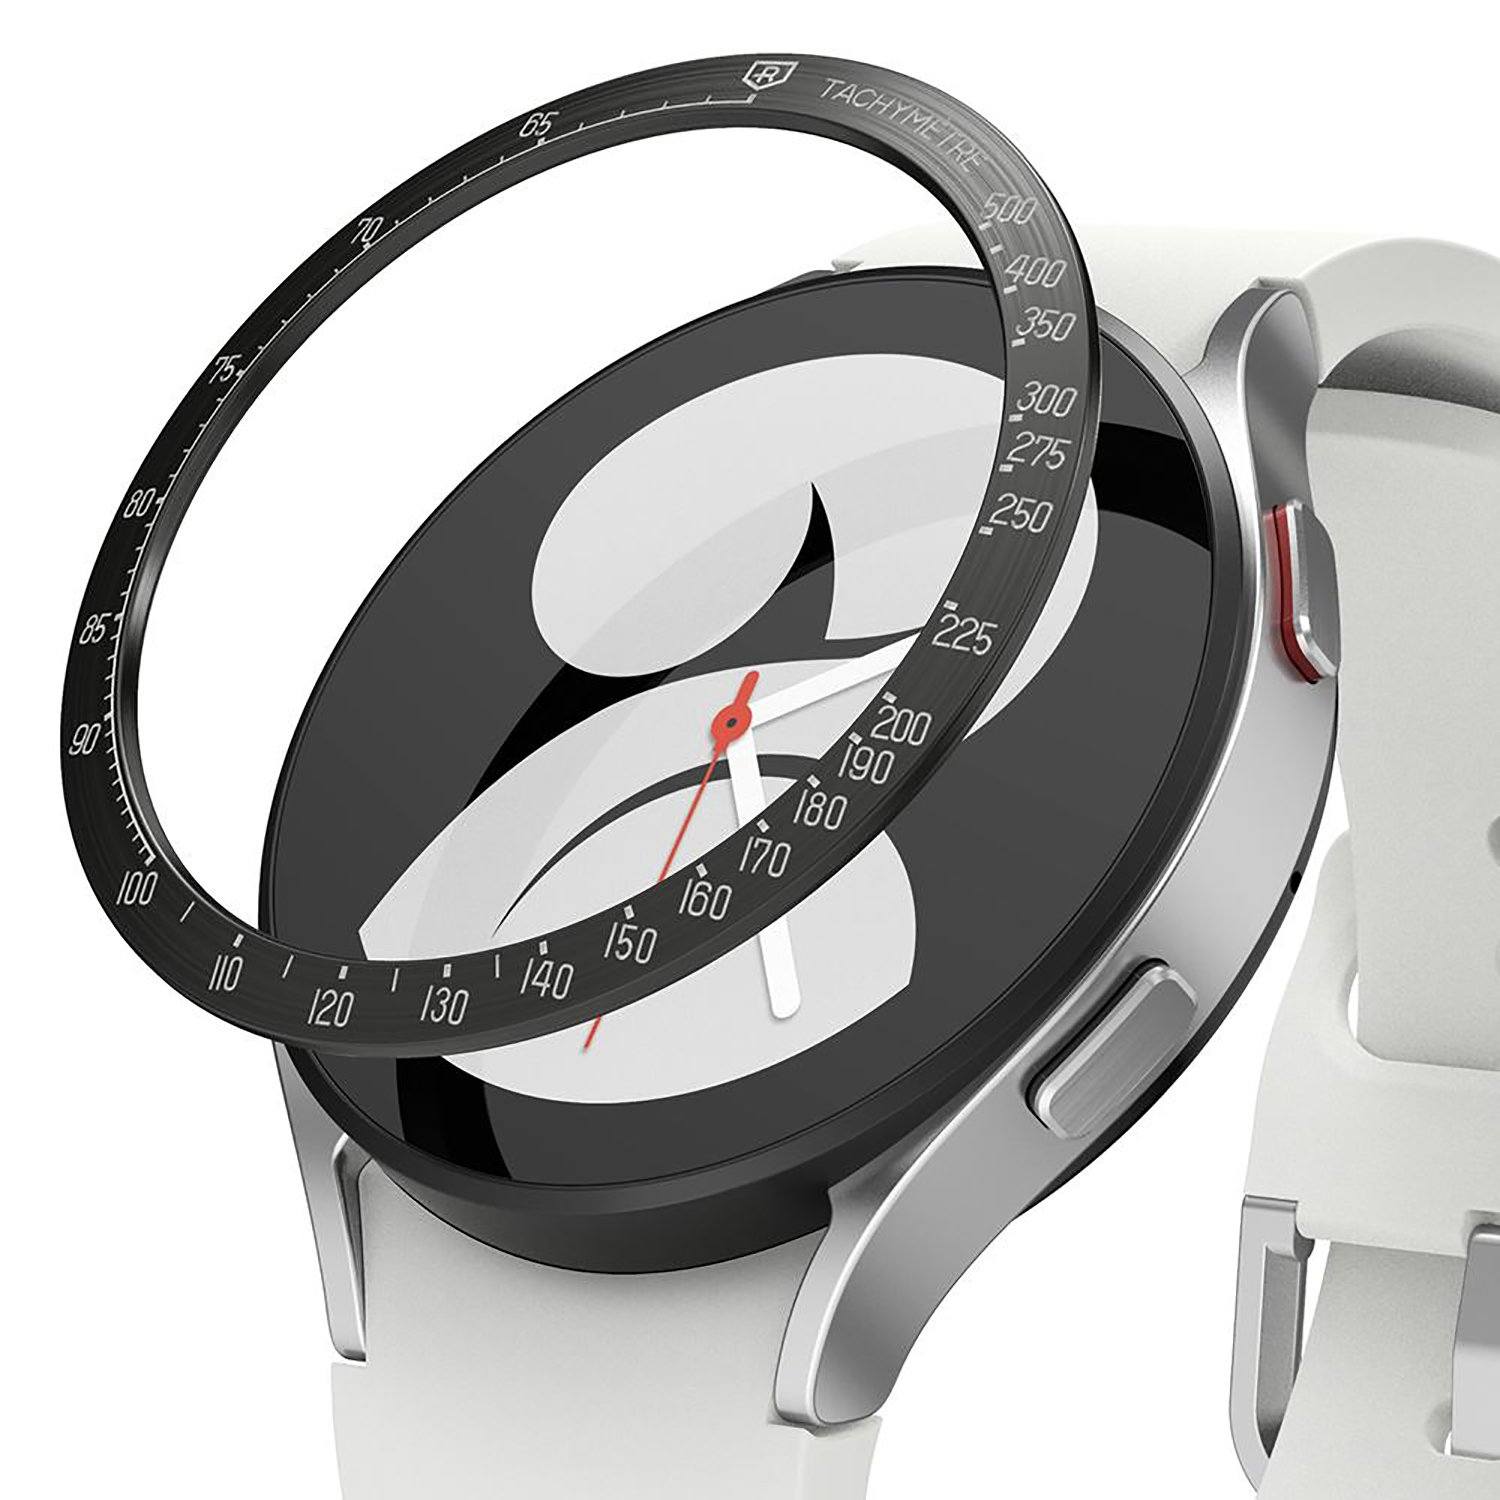 Ringke BEZEL STYLING for Galaxy Watch 4 44mm Default Ringke 44mm - GW4-44-03 (StainlessSteel) 